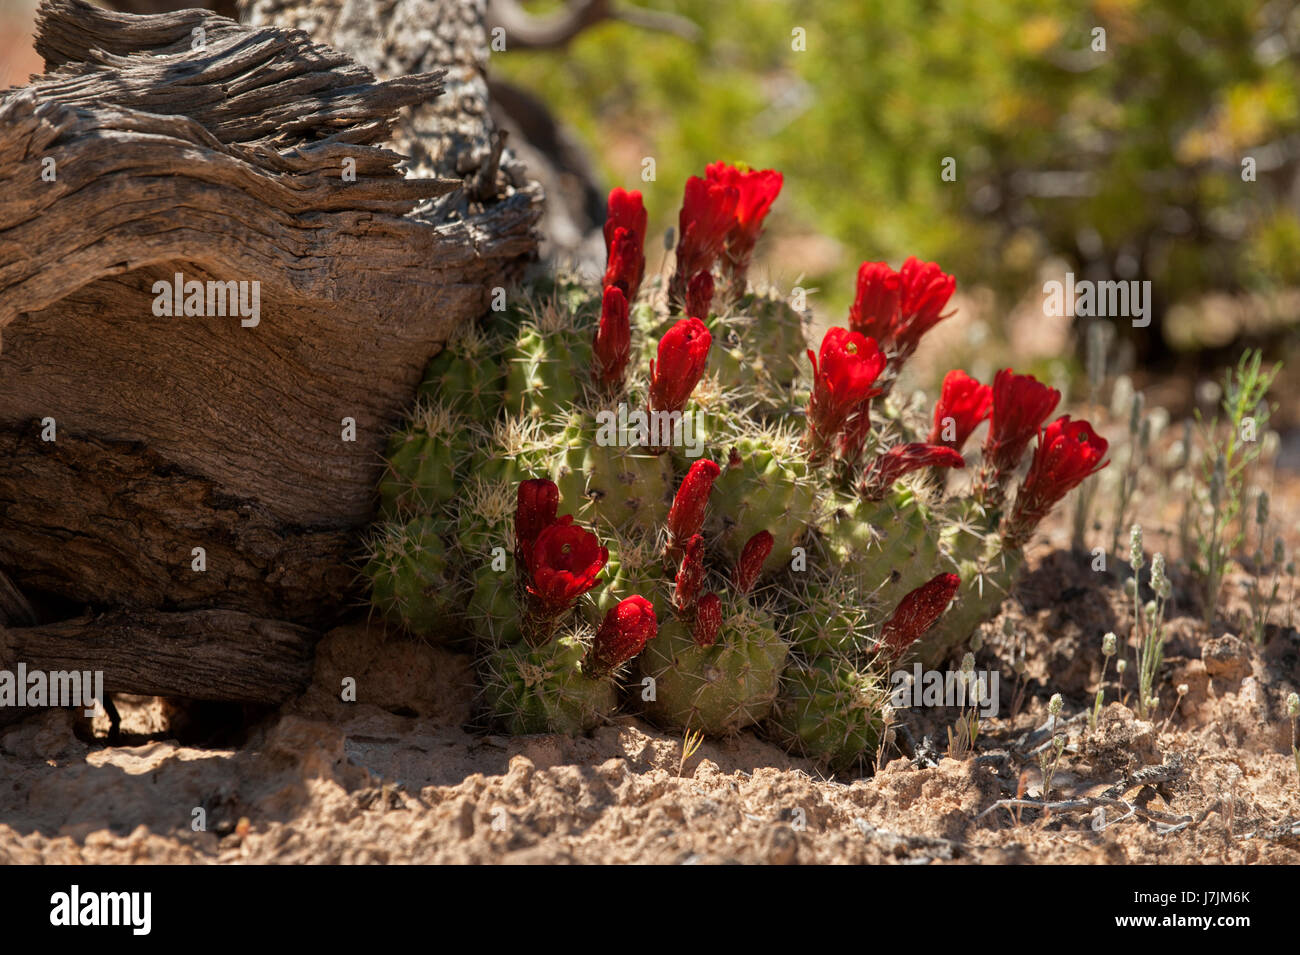 Claret Cup (Echinocereus triglochidiatus) cactus in bloom Stock Photo